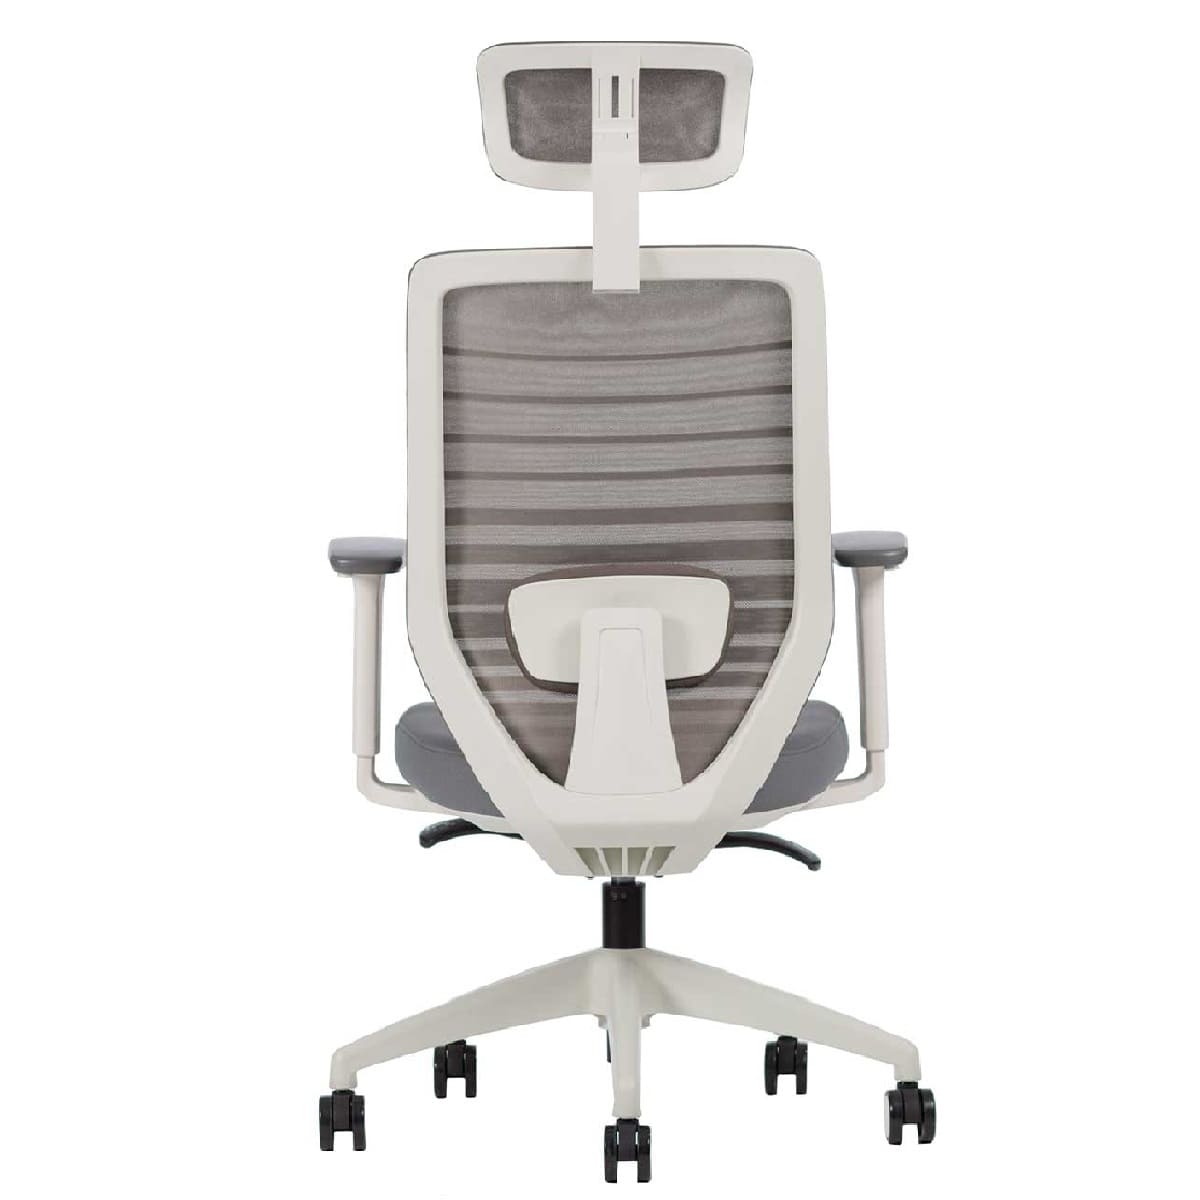 Sillón ejecutivo Delta respaldo alto y asiento tapizado en malla gris con base nylon